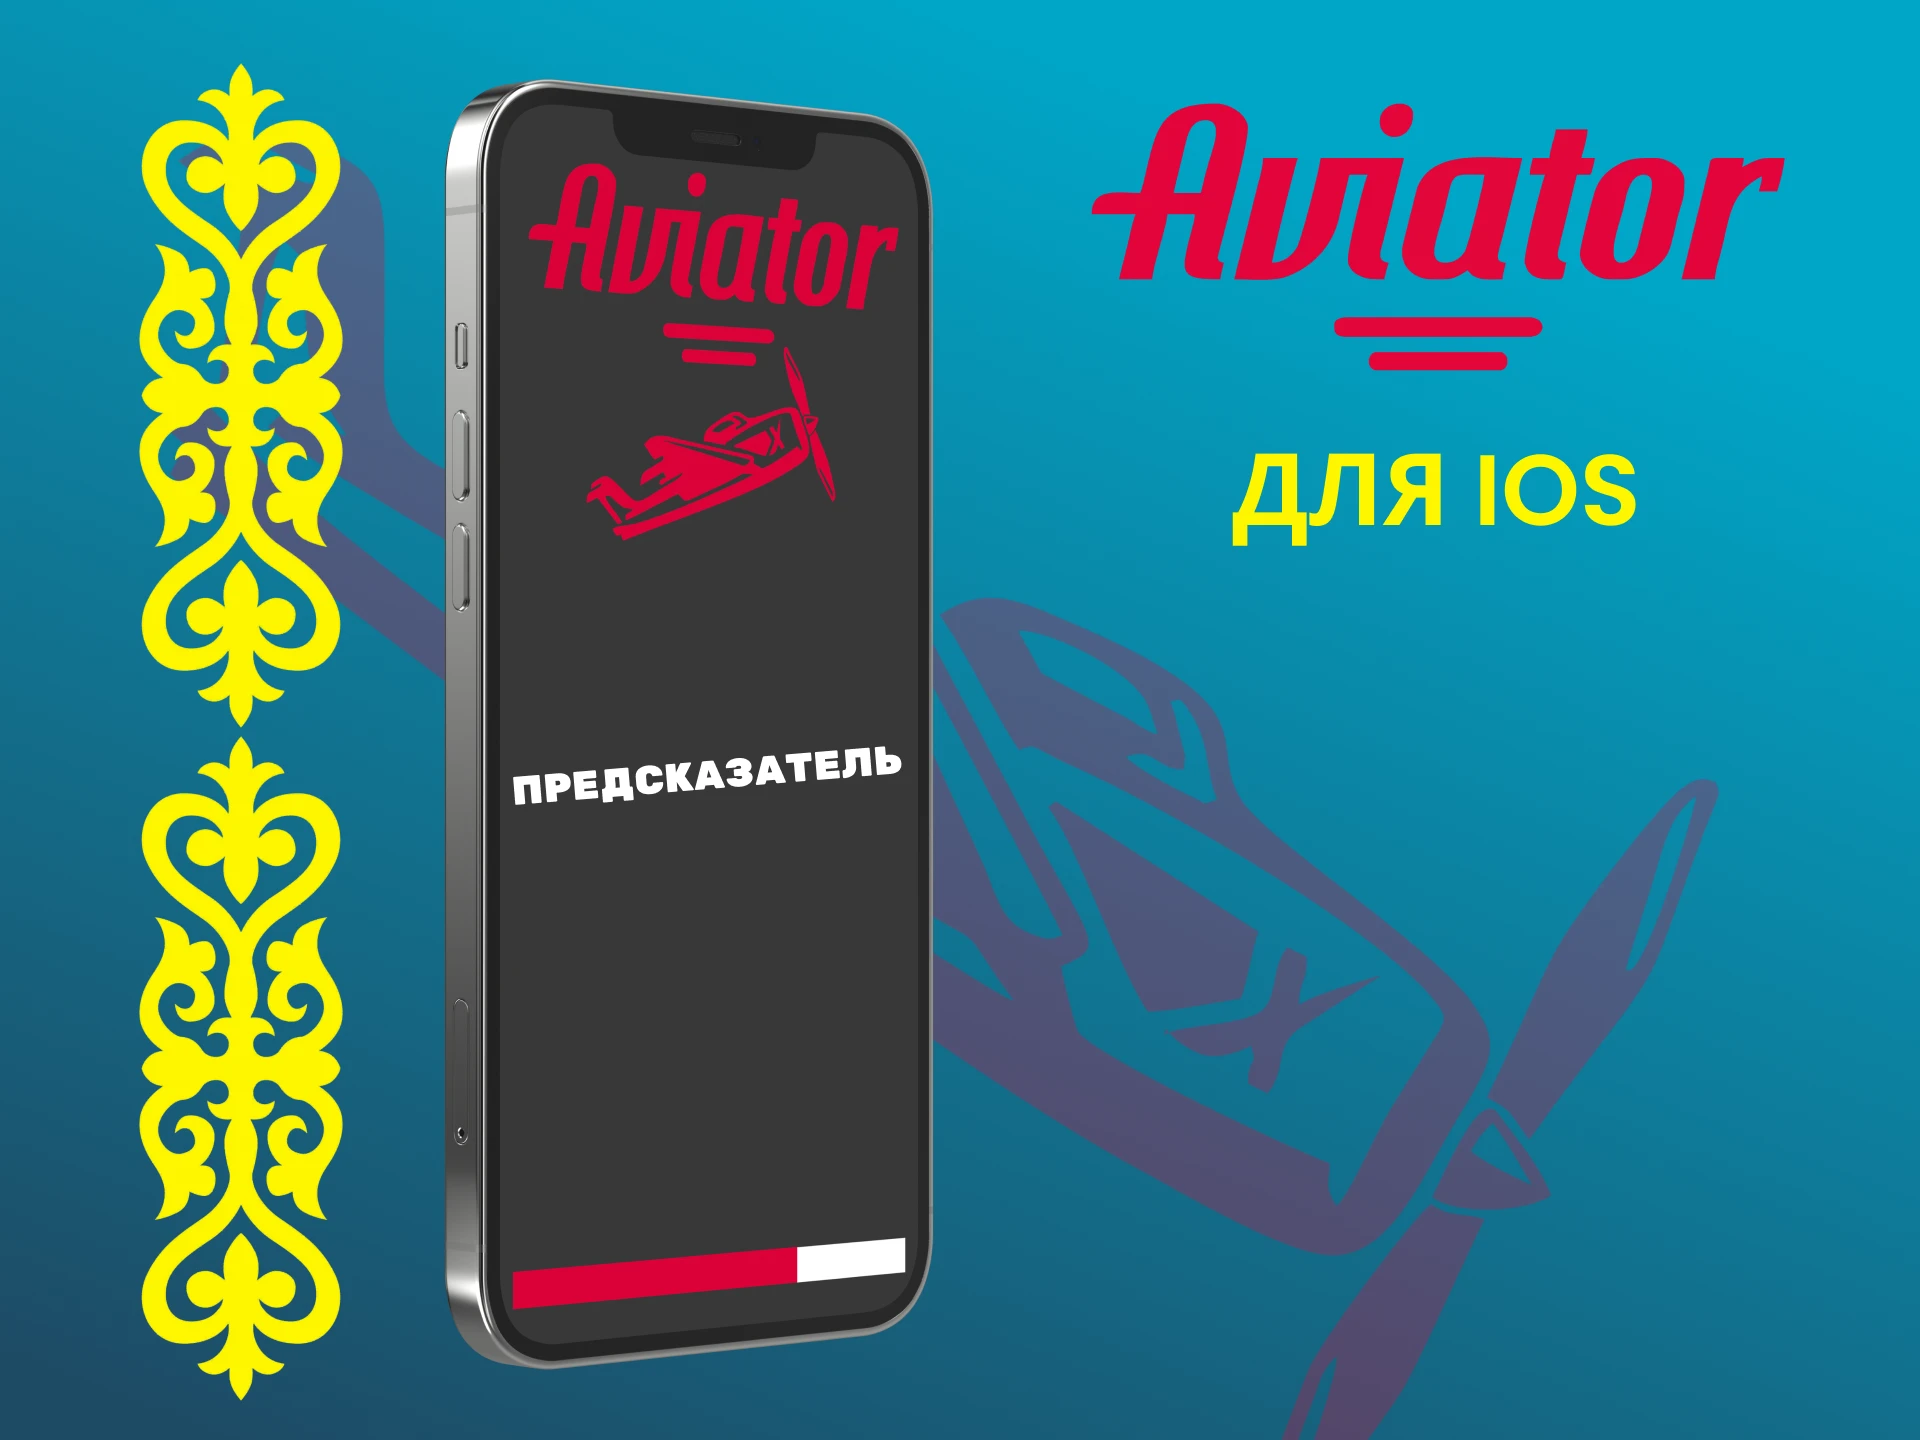 Скачайте предсказатель на iOS, чтобы узнать больше об игре Авиатор.